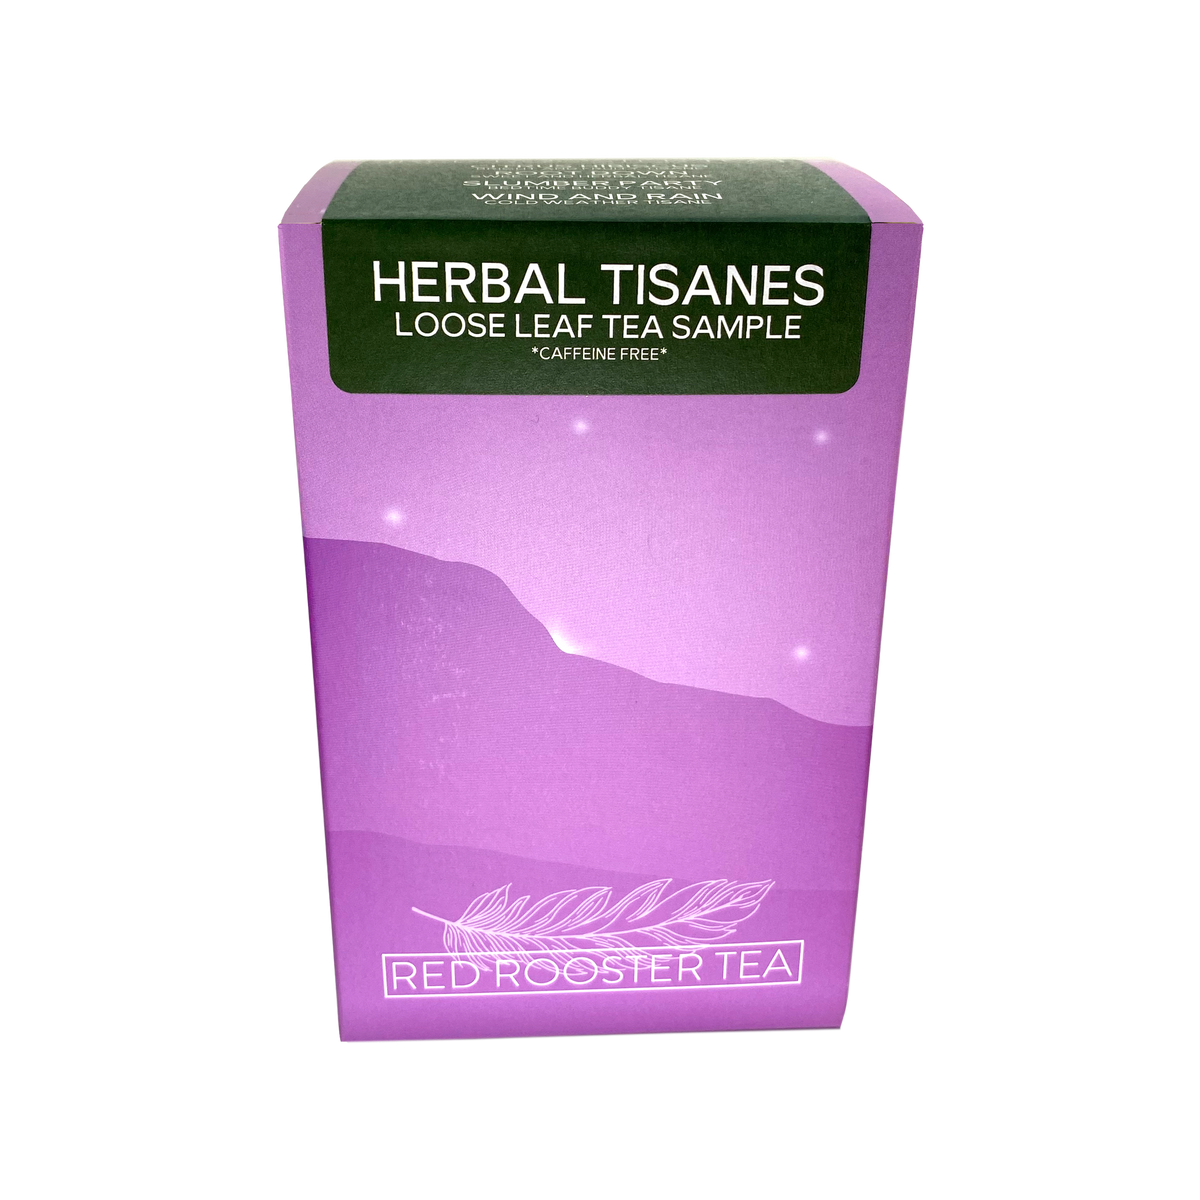 Herbal Tisanes Sample Box